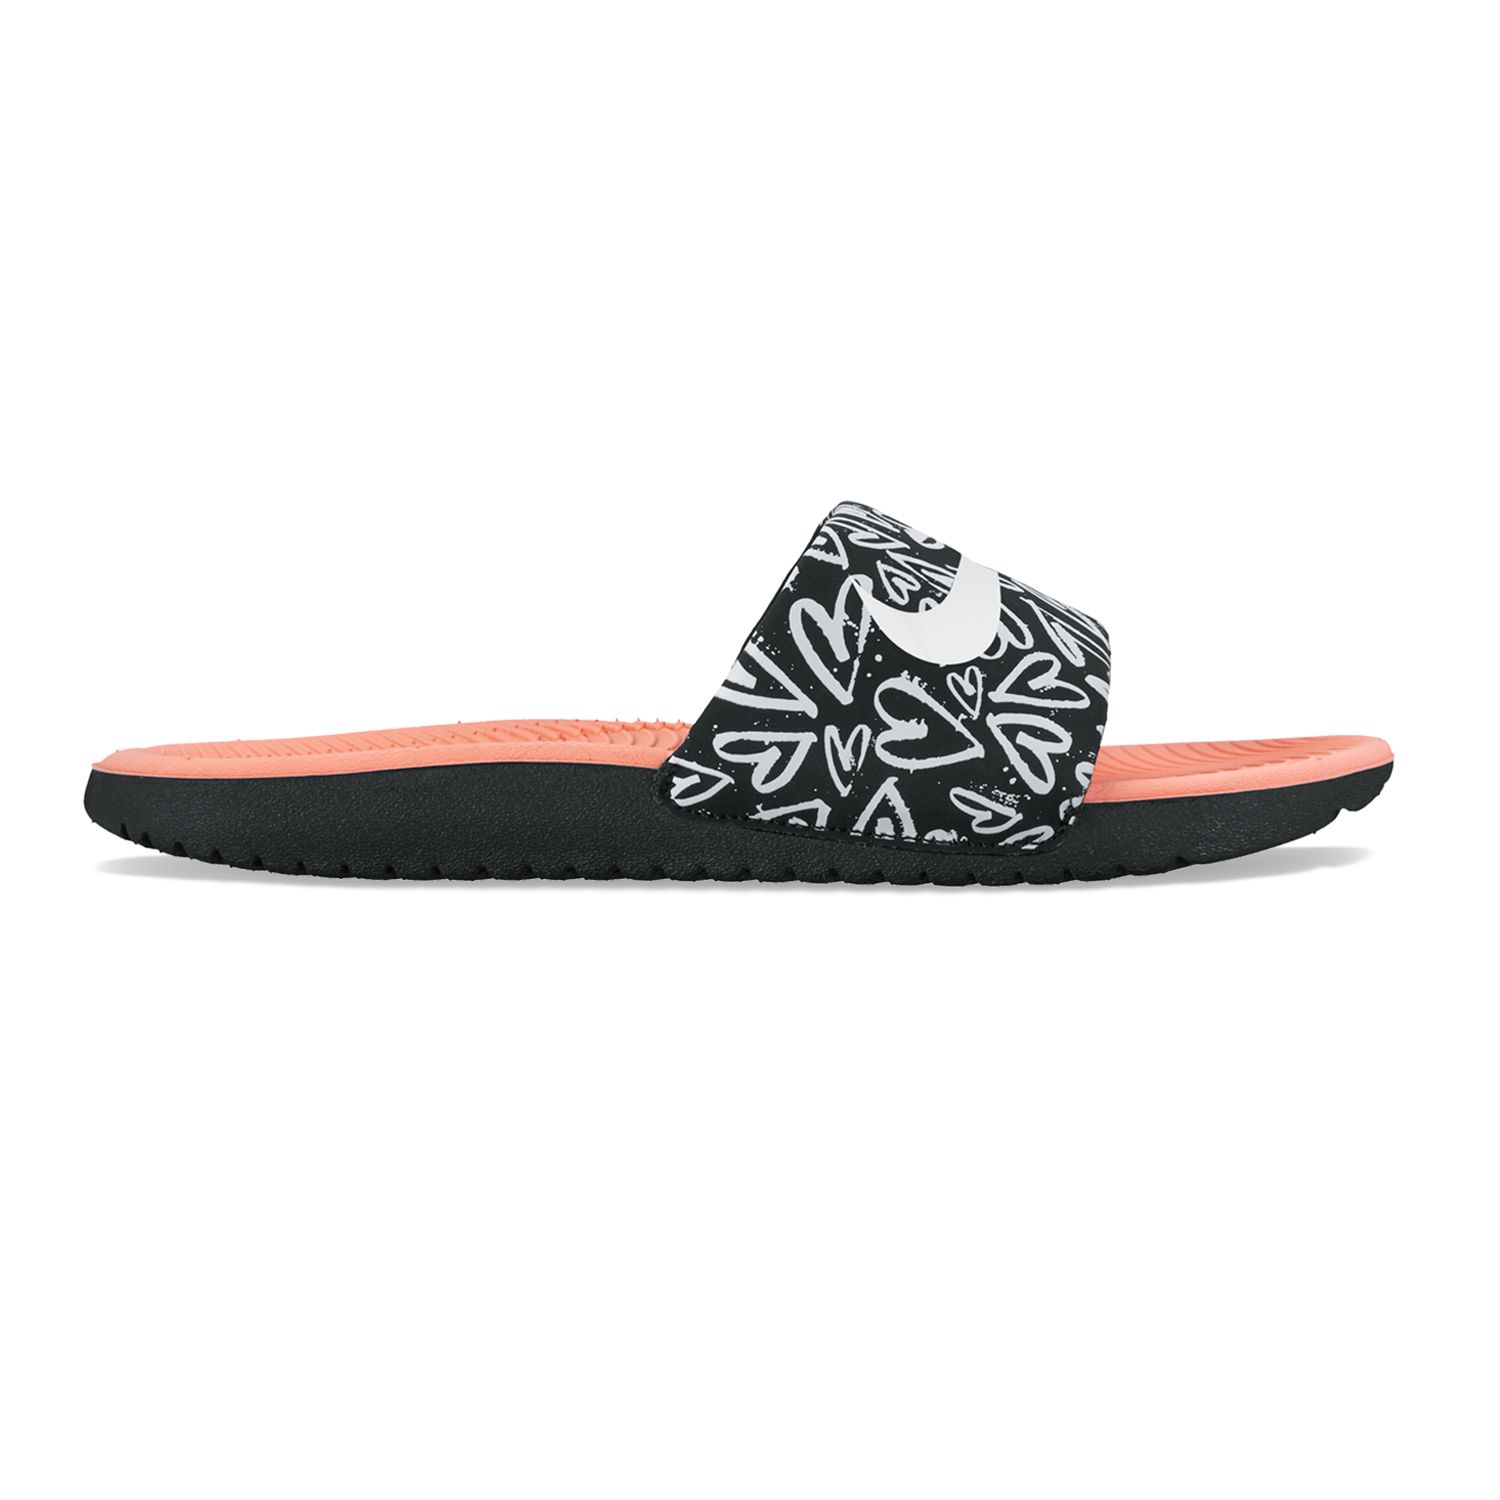 Nike Kawa Slide Print Girls' Sandals